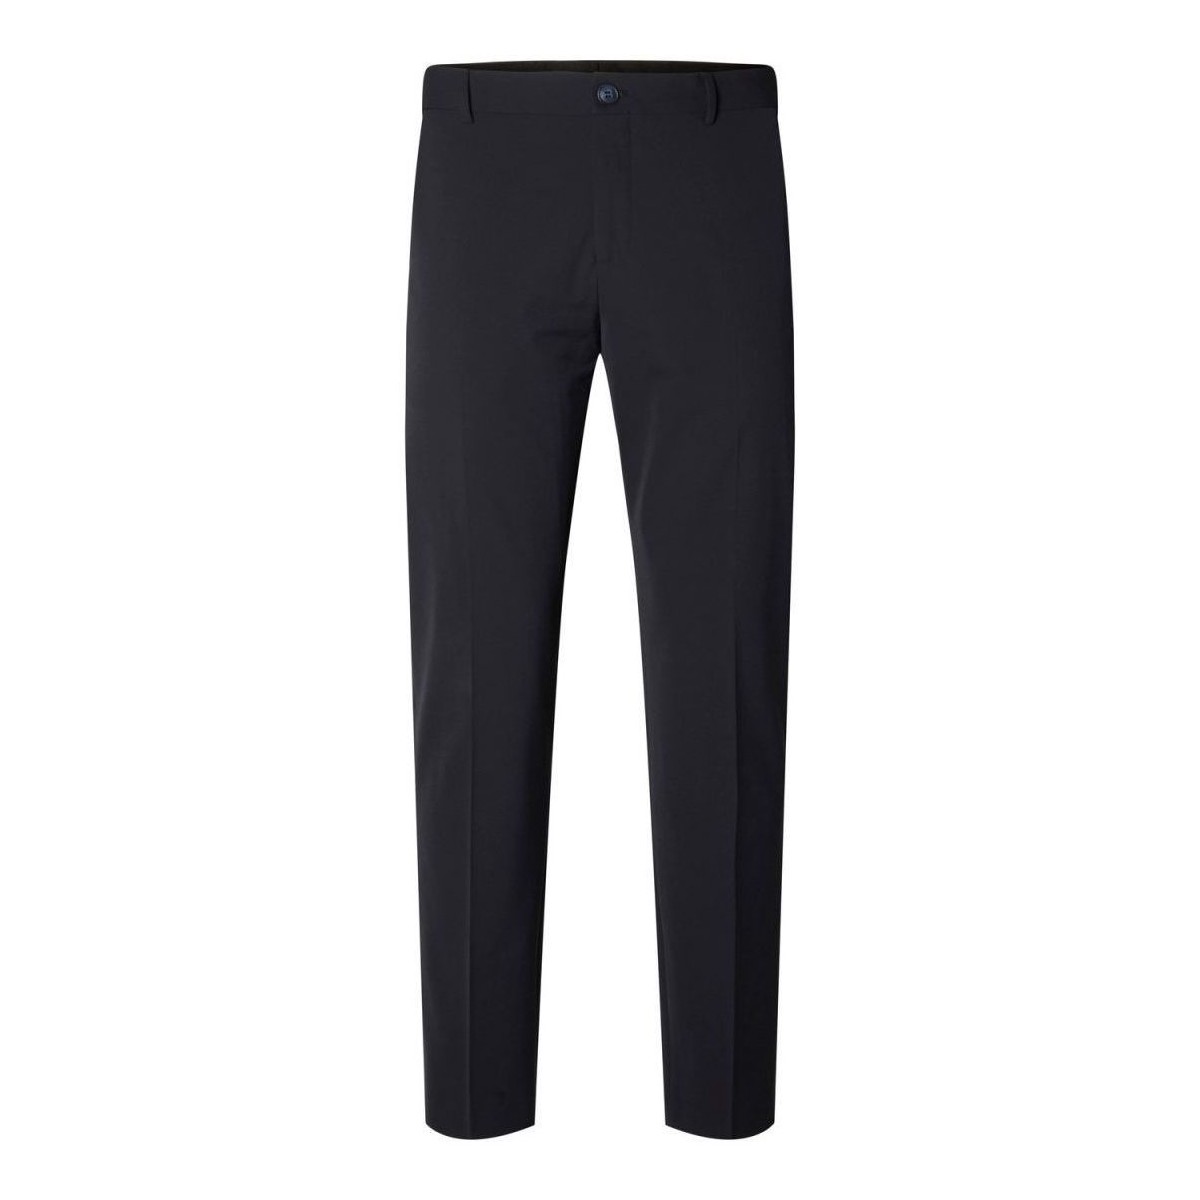 Vêtements Homme Pantalons Selected 16087825 SLIM LIAM-NAVY BLAZER Bleu